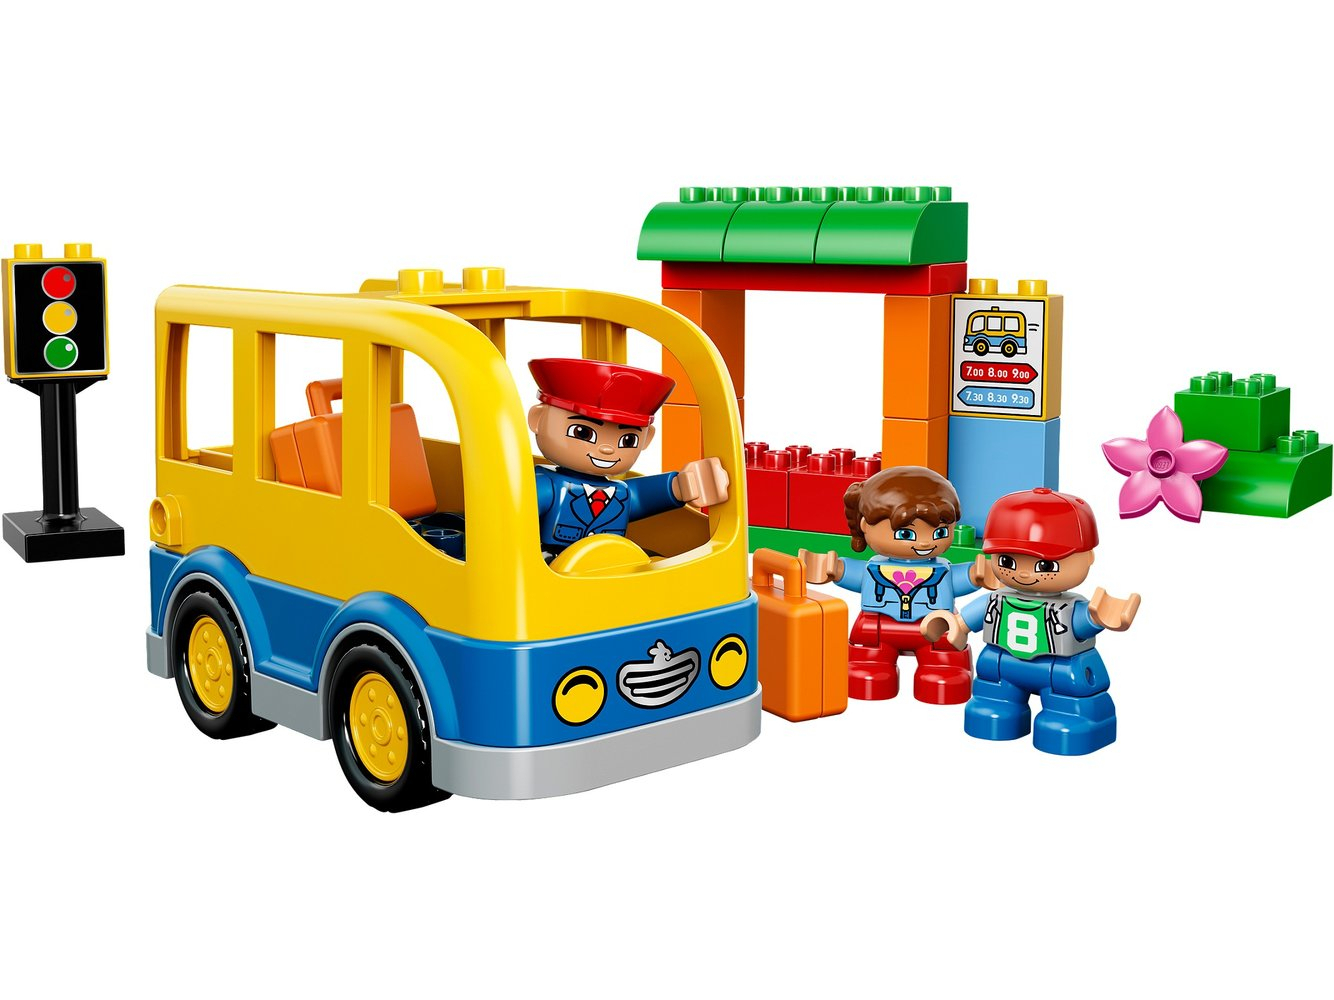 Lego Duplo 10528 Pas Cher, Le Bus Scolaire tout Ecole Duplo